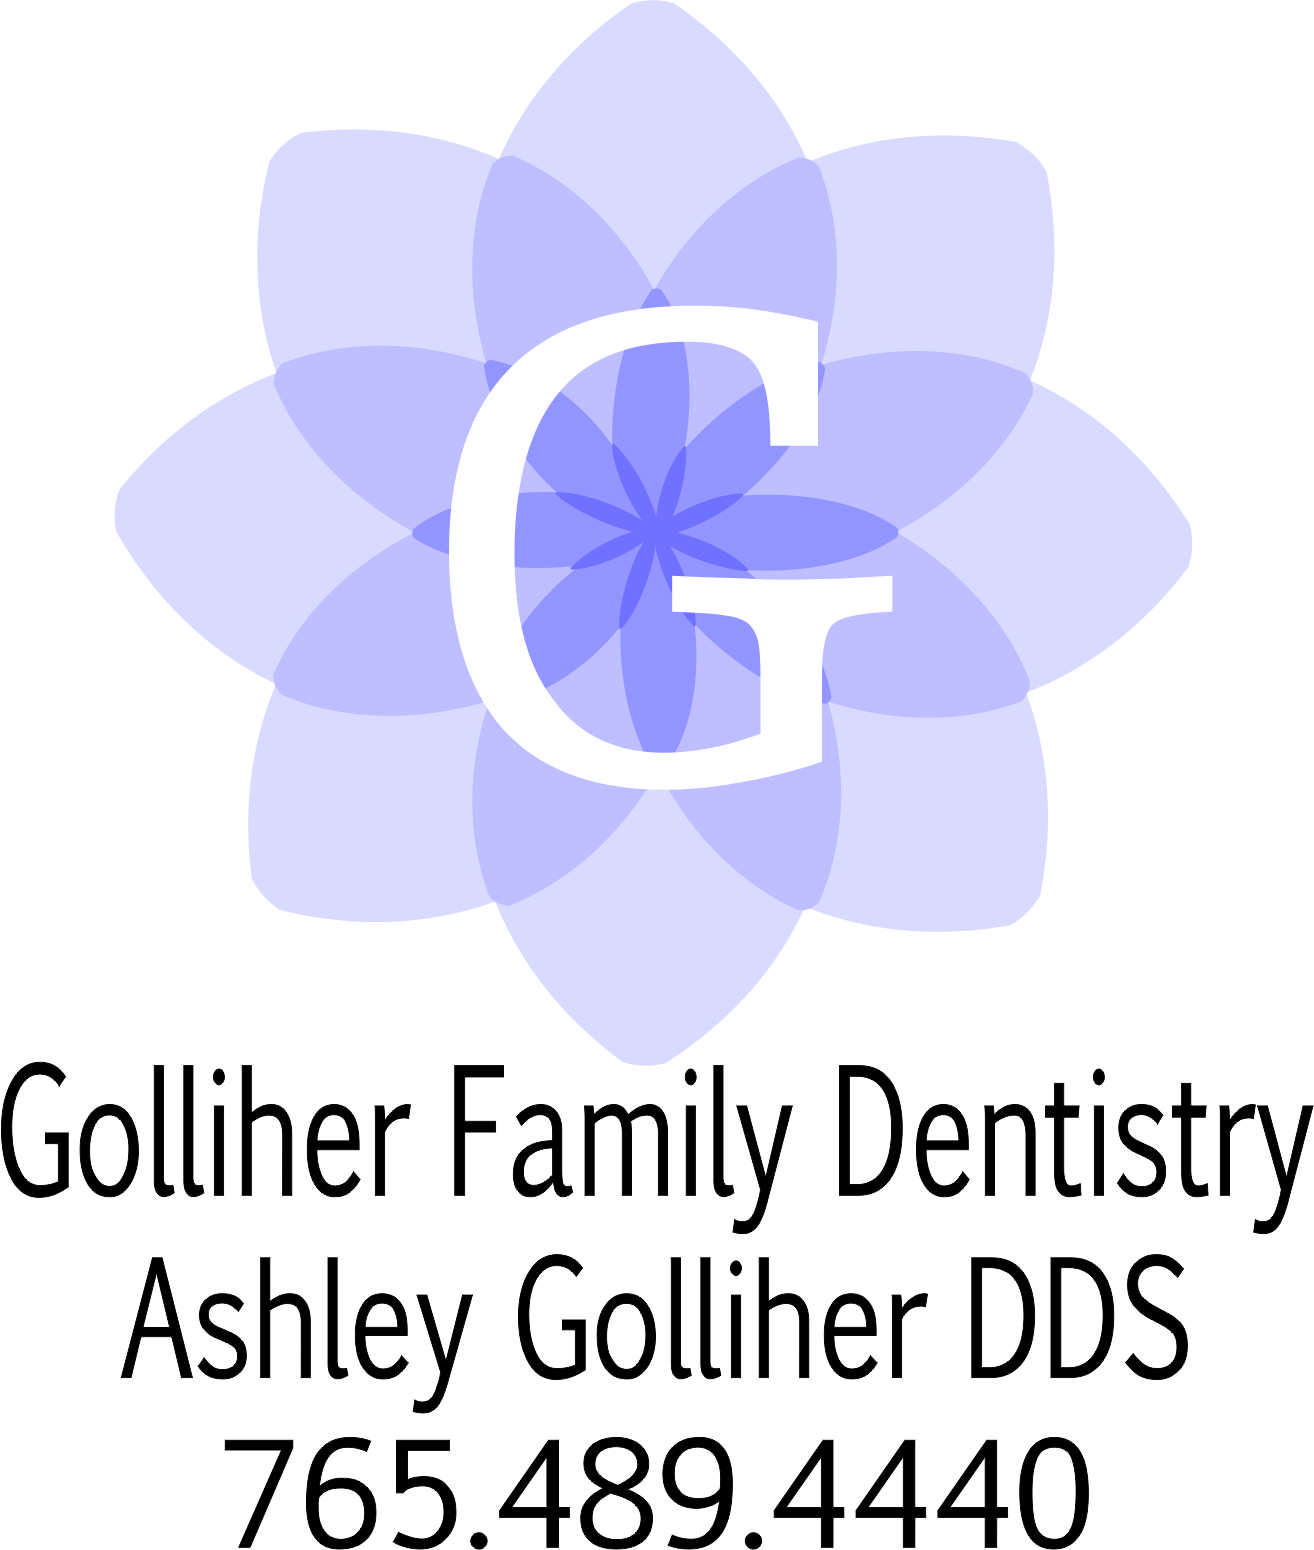 Golliher Family Dentistry